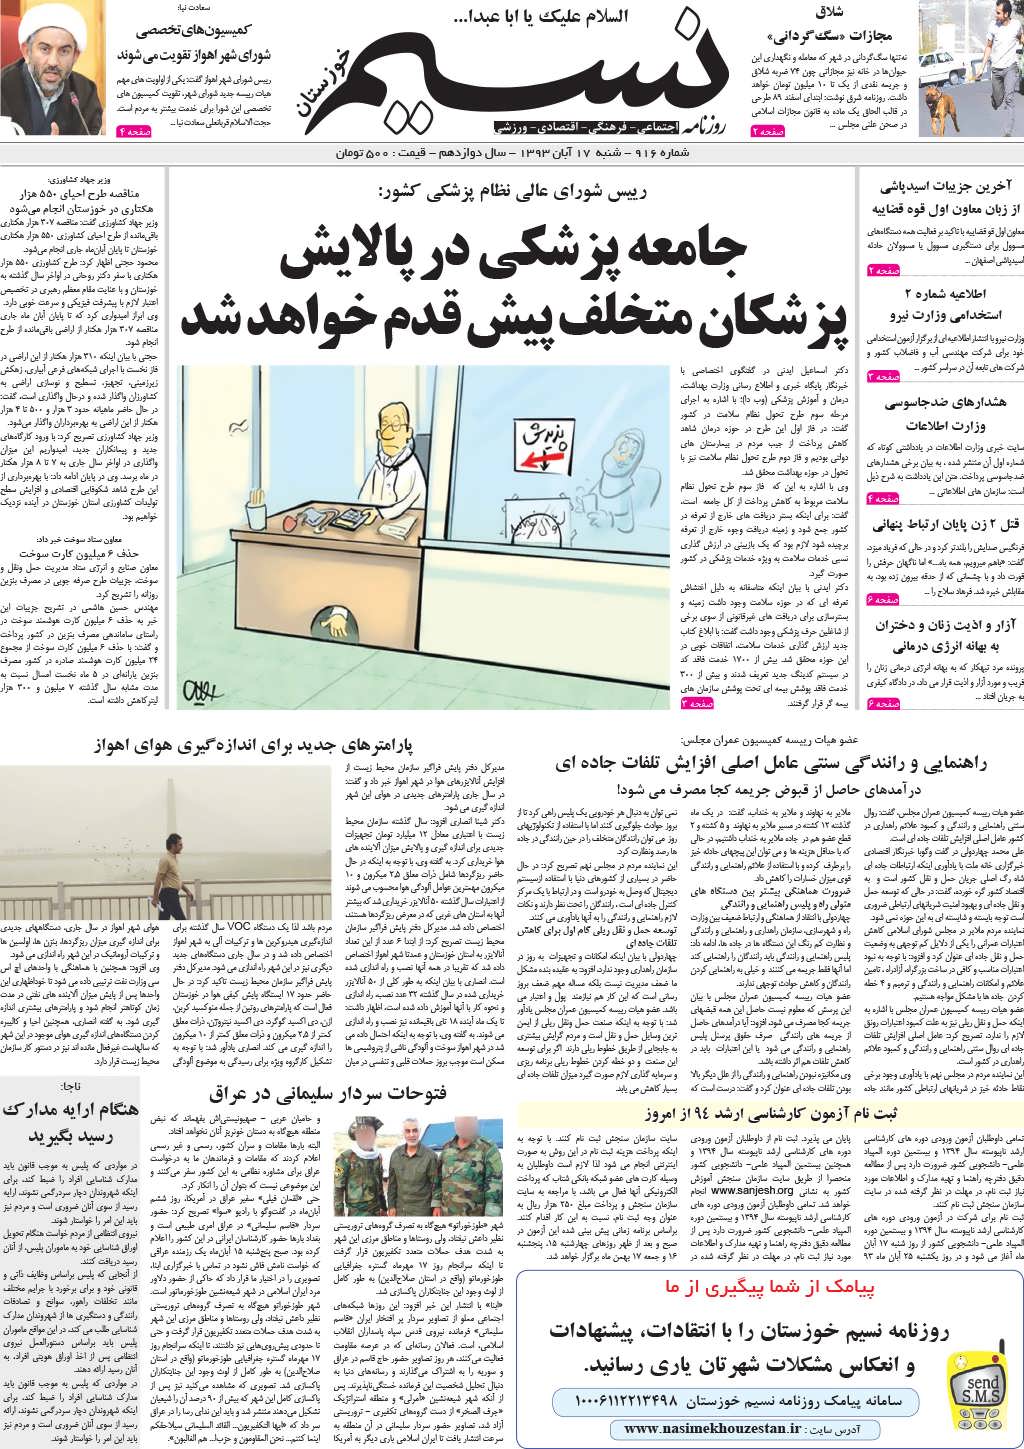 صفحه اصلی روزنامه نسیم شماره 916 